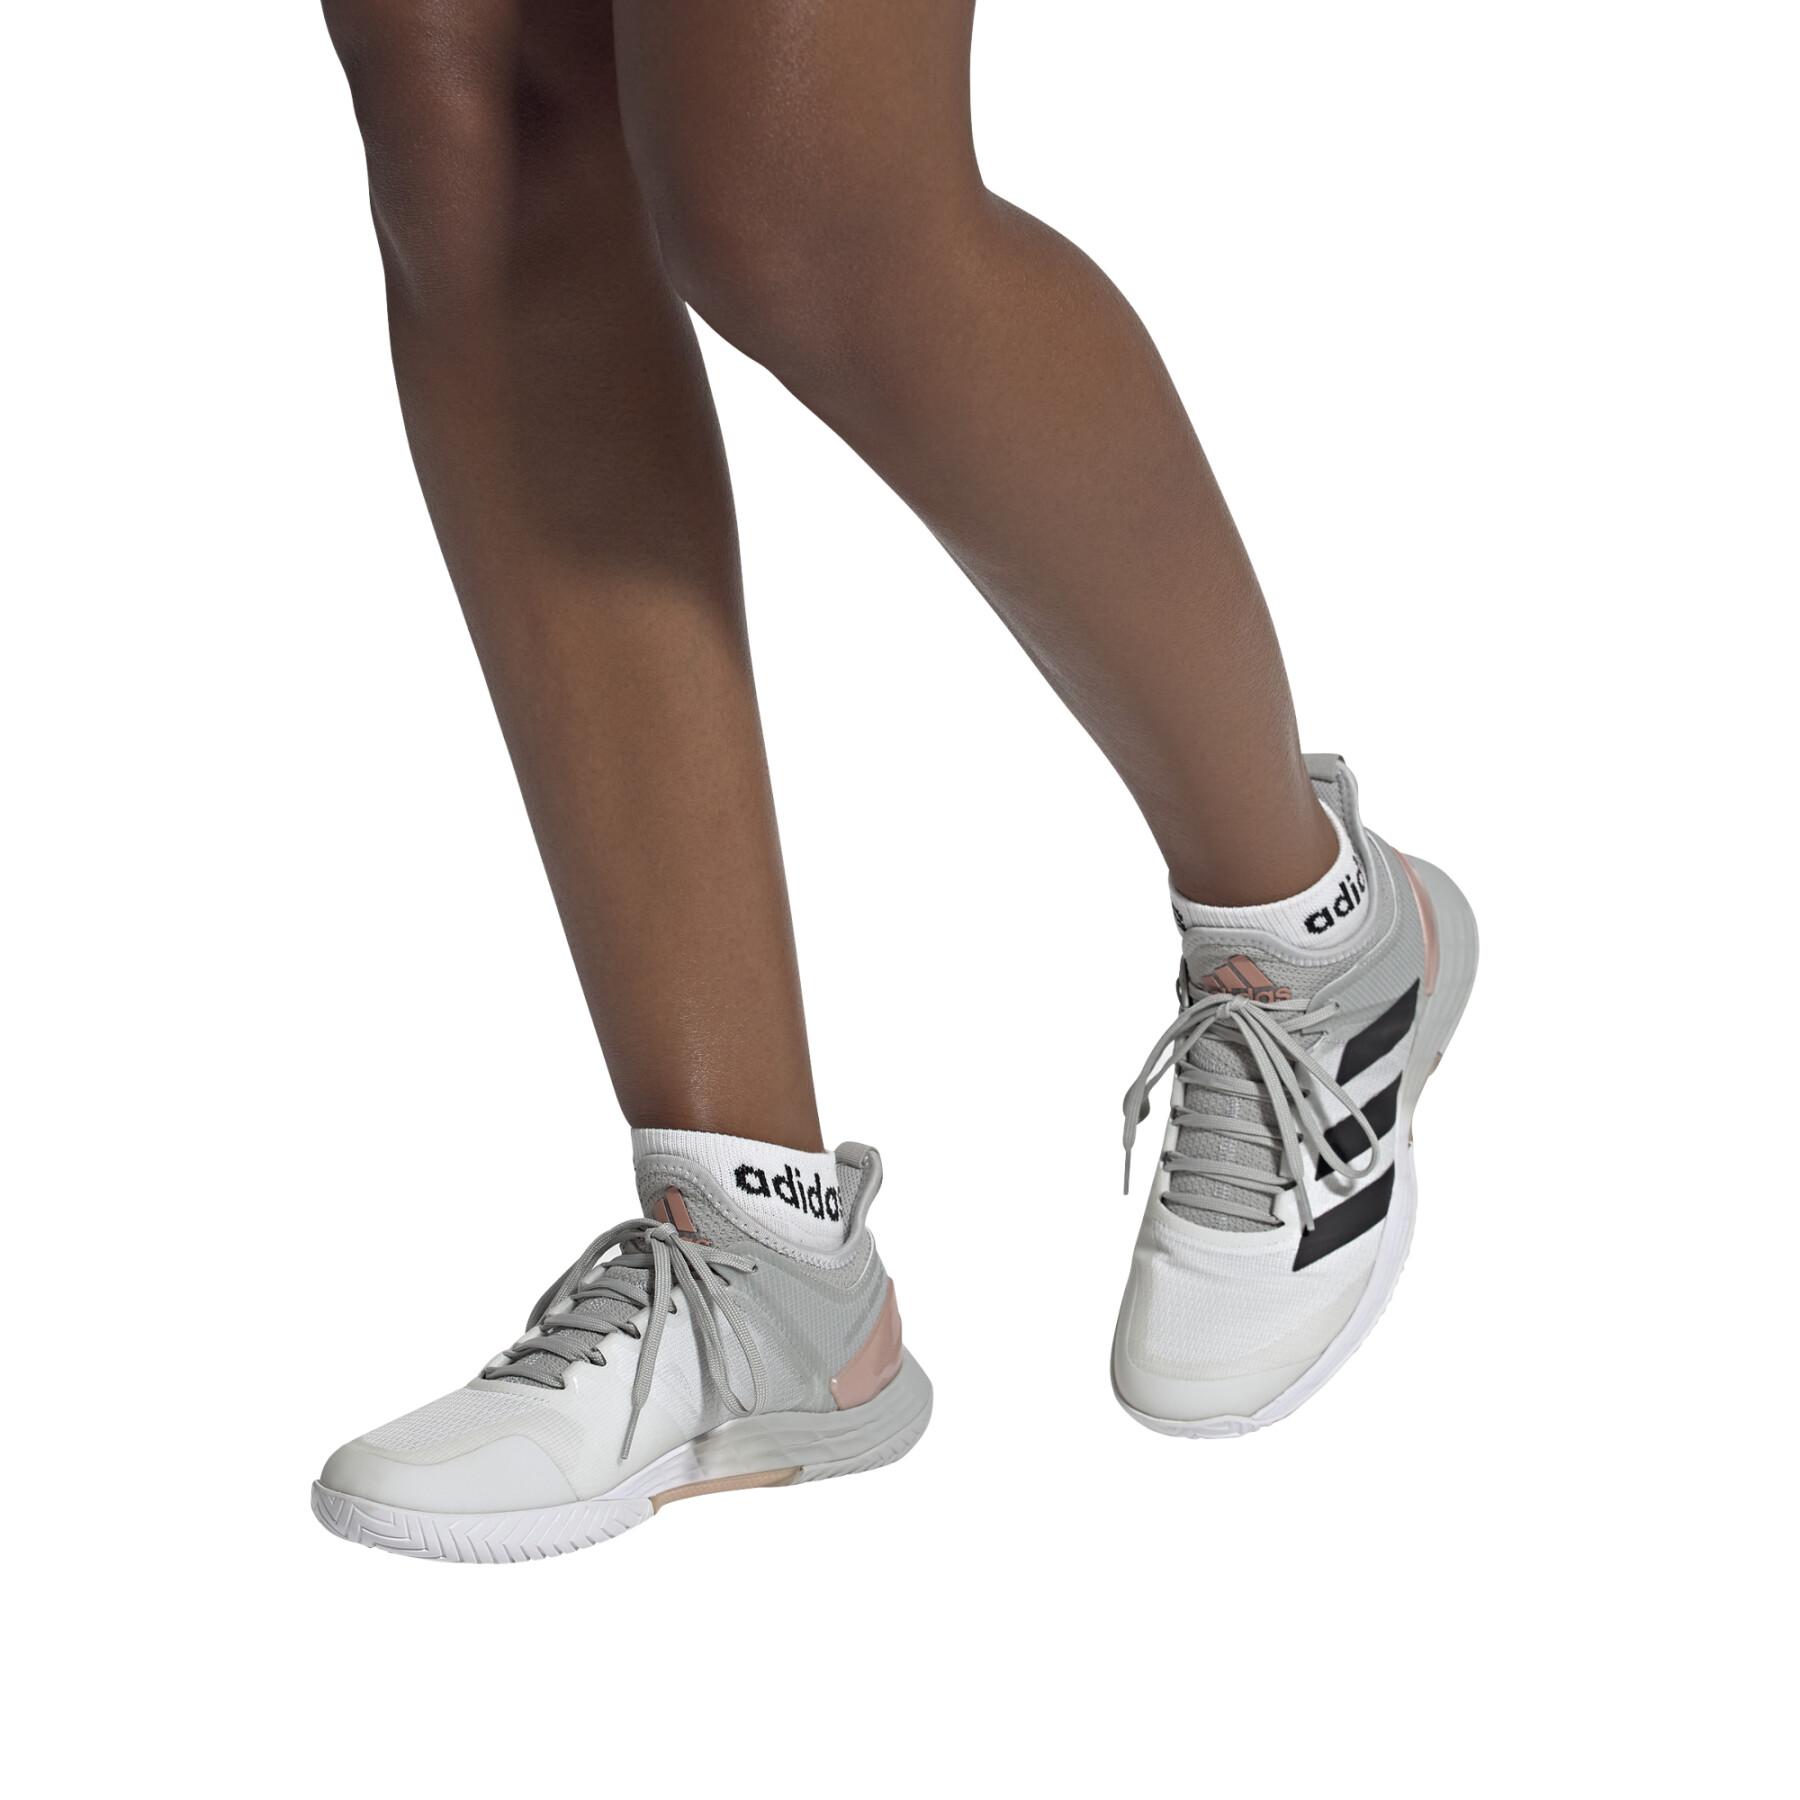 Damen-Tennisschuhe adidas Adizero Ubersonic 4